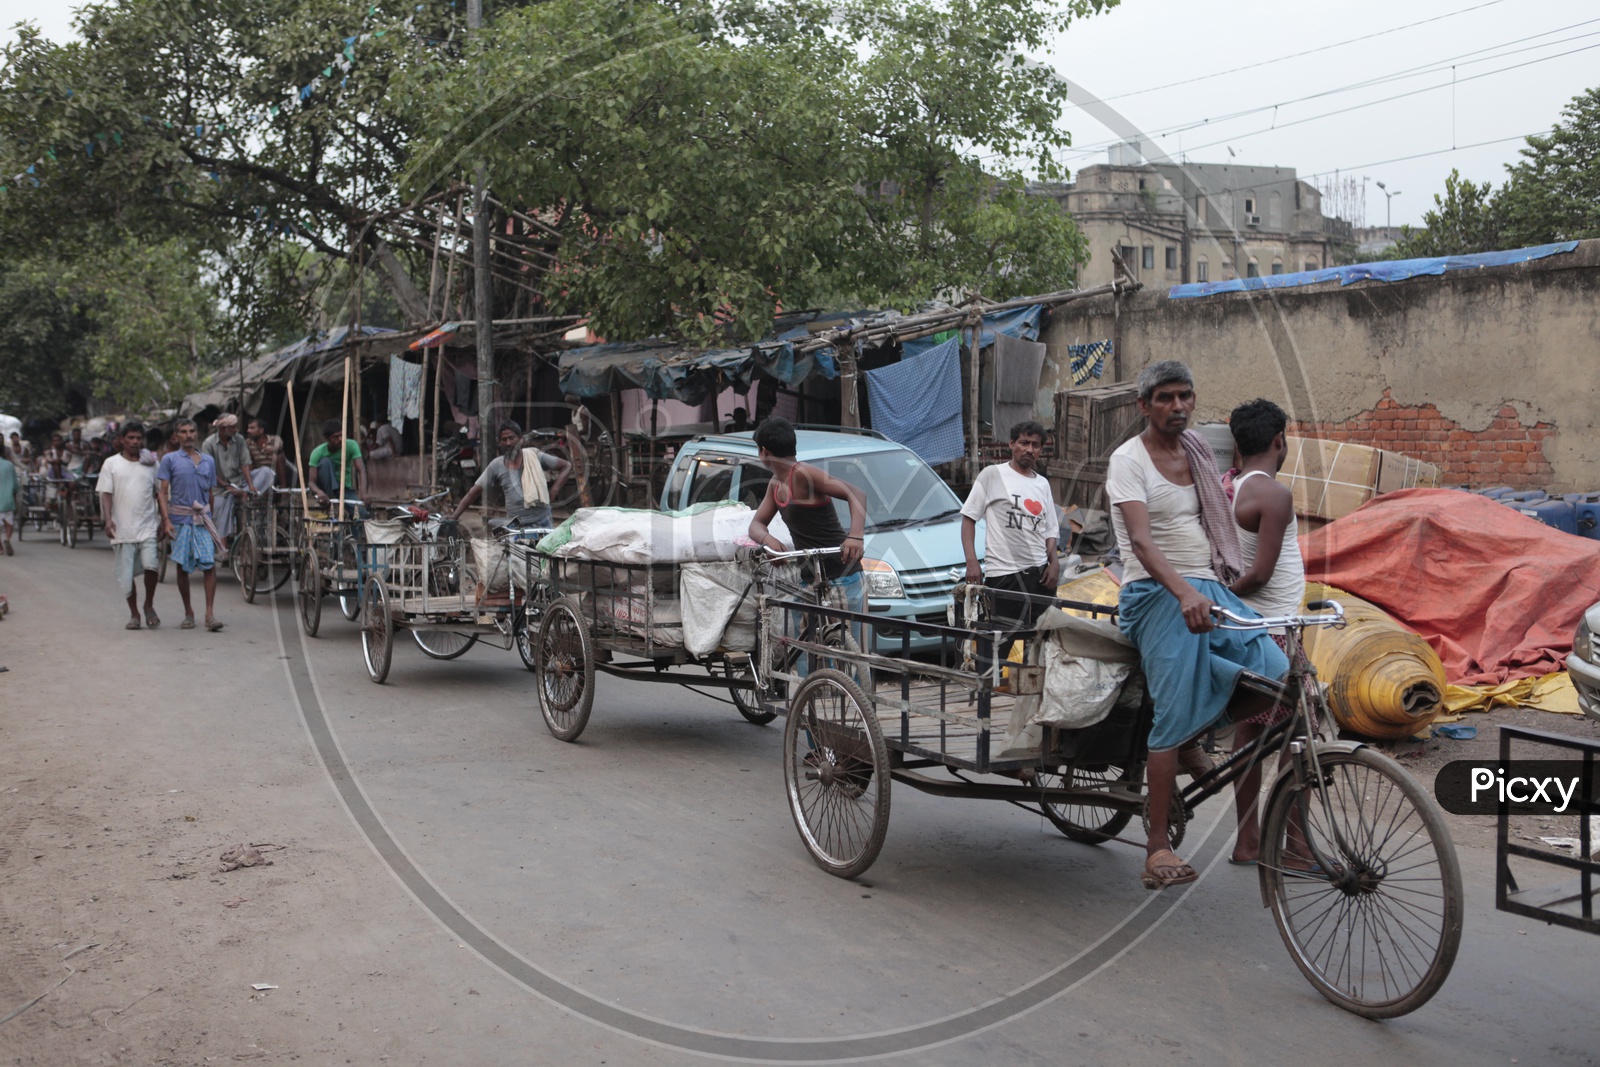 Men pedaling the rickshaw